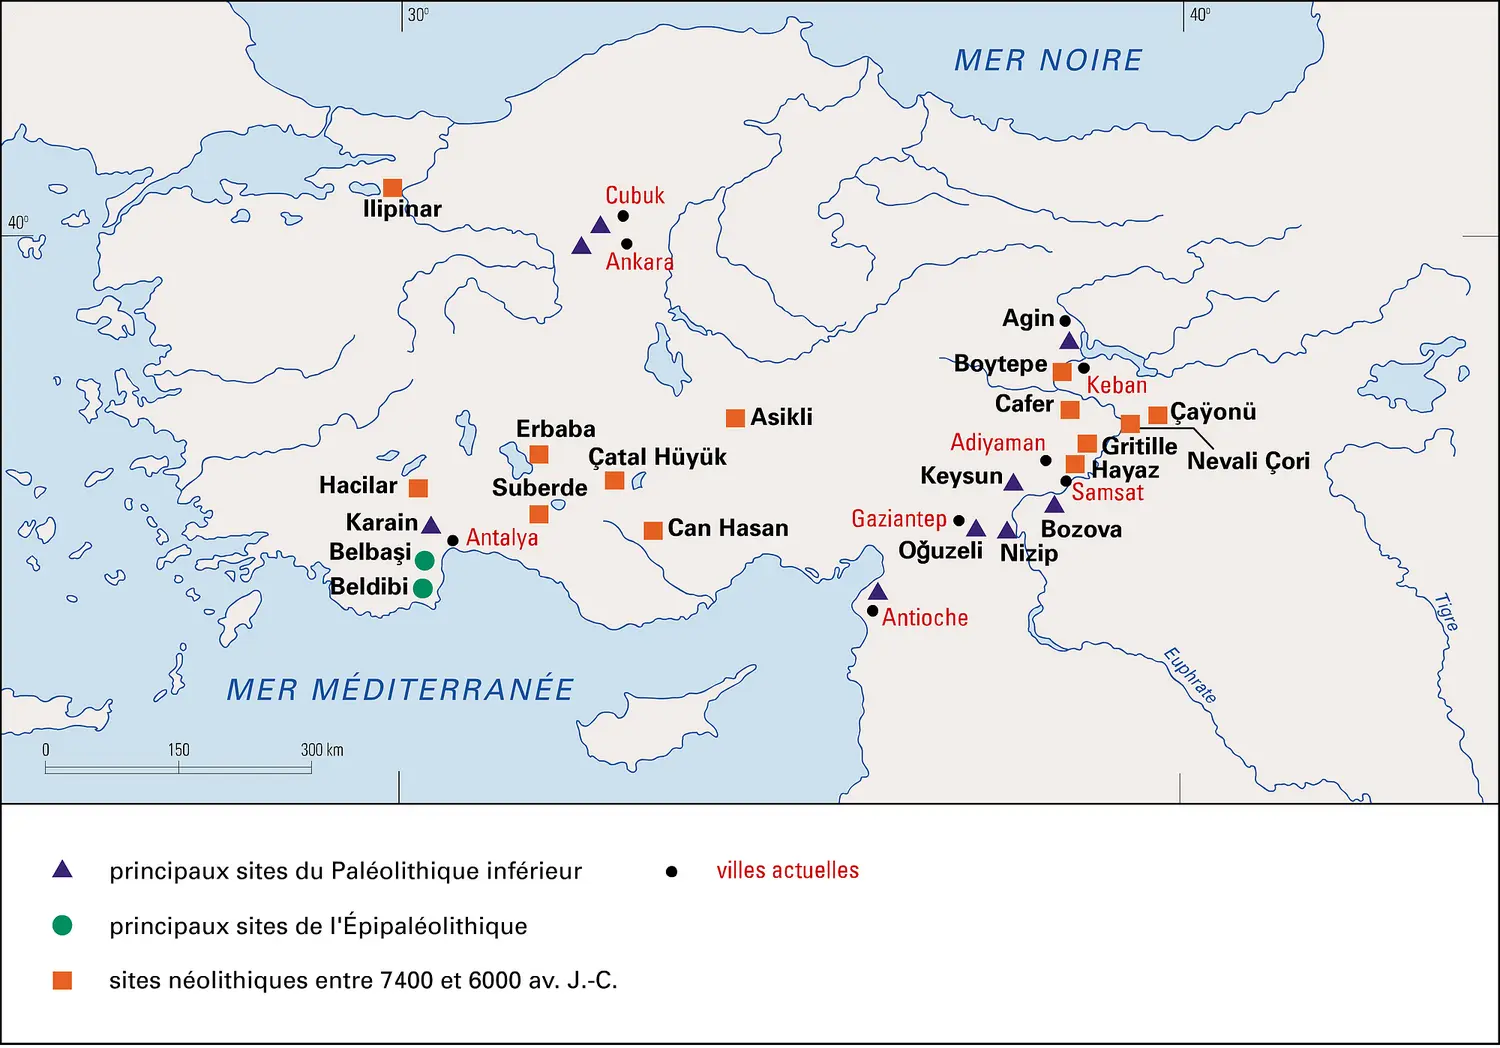 Anatolie préhistorique jusqu'à 6000 avant J.-C.